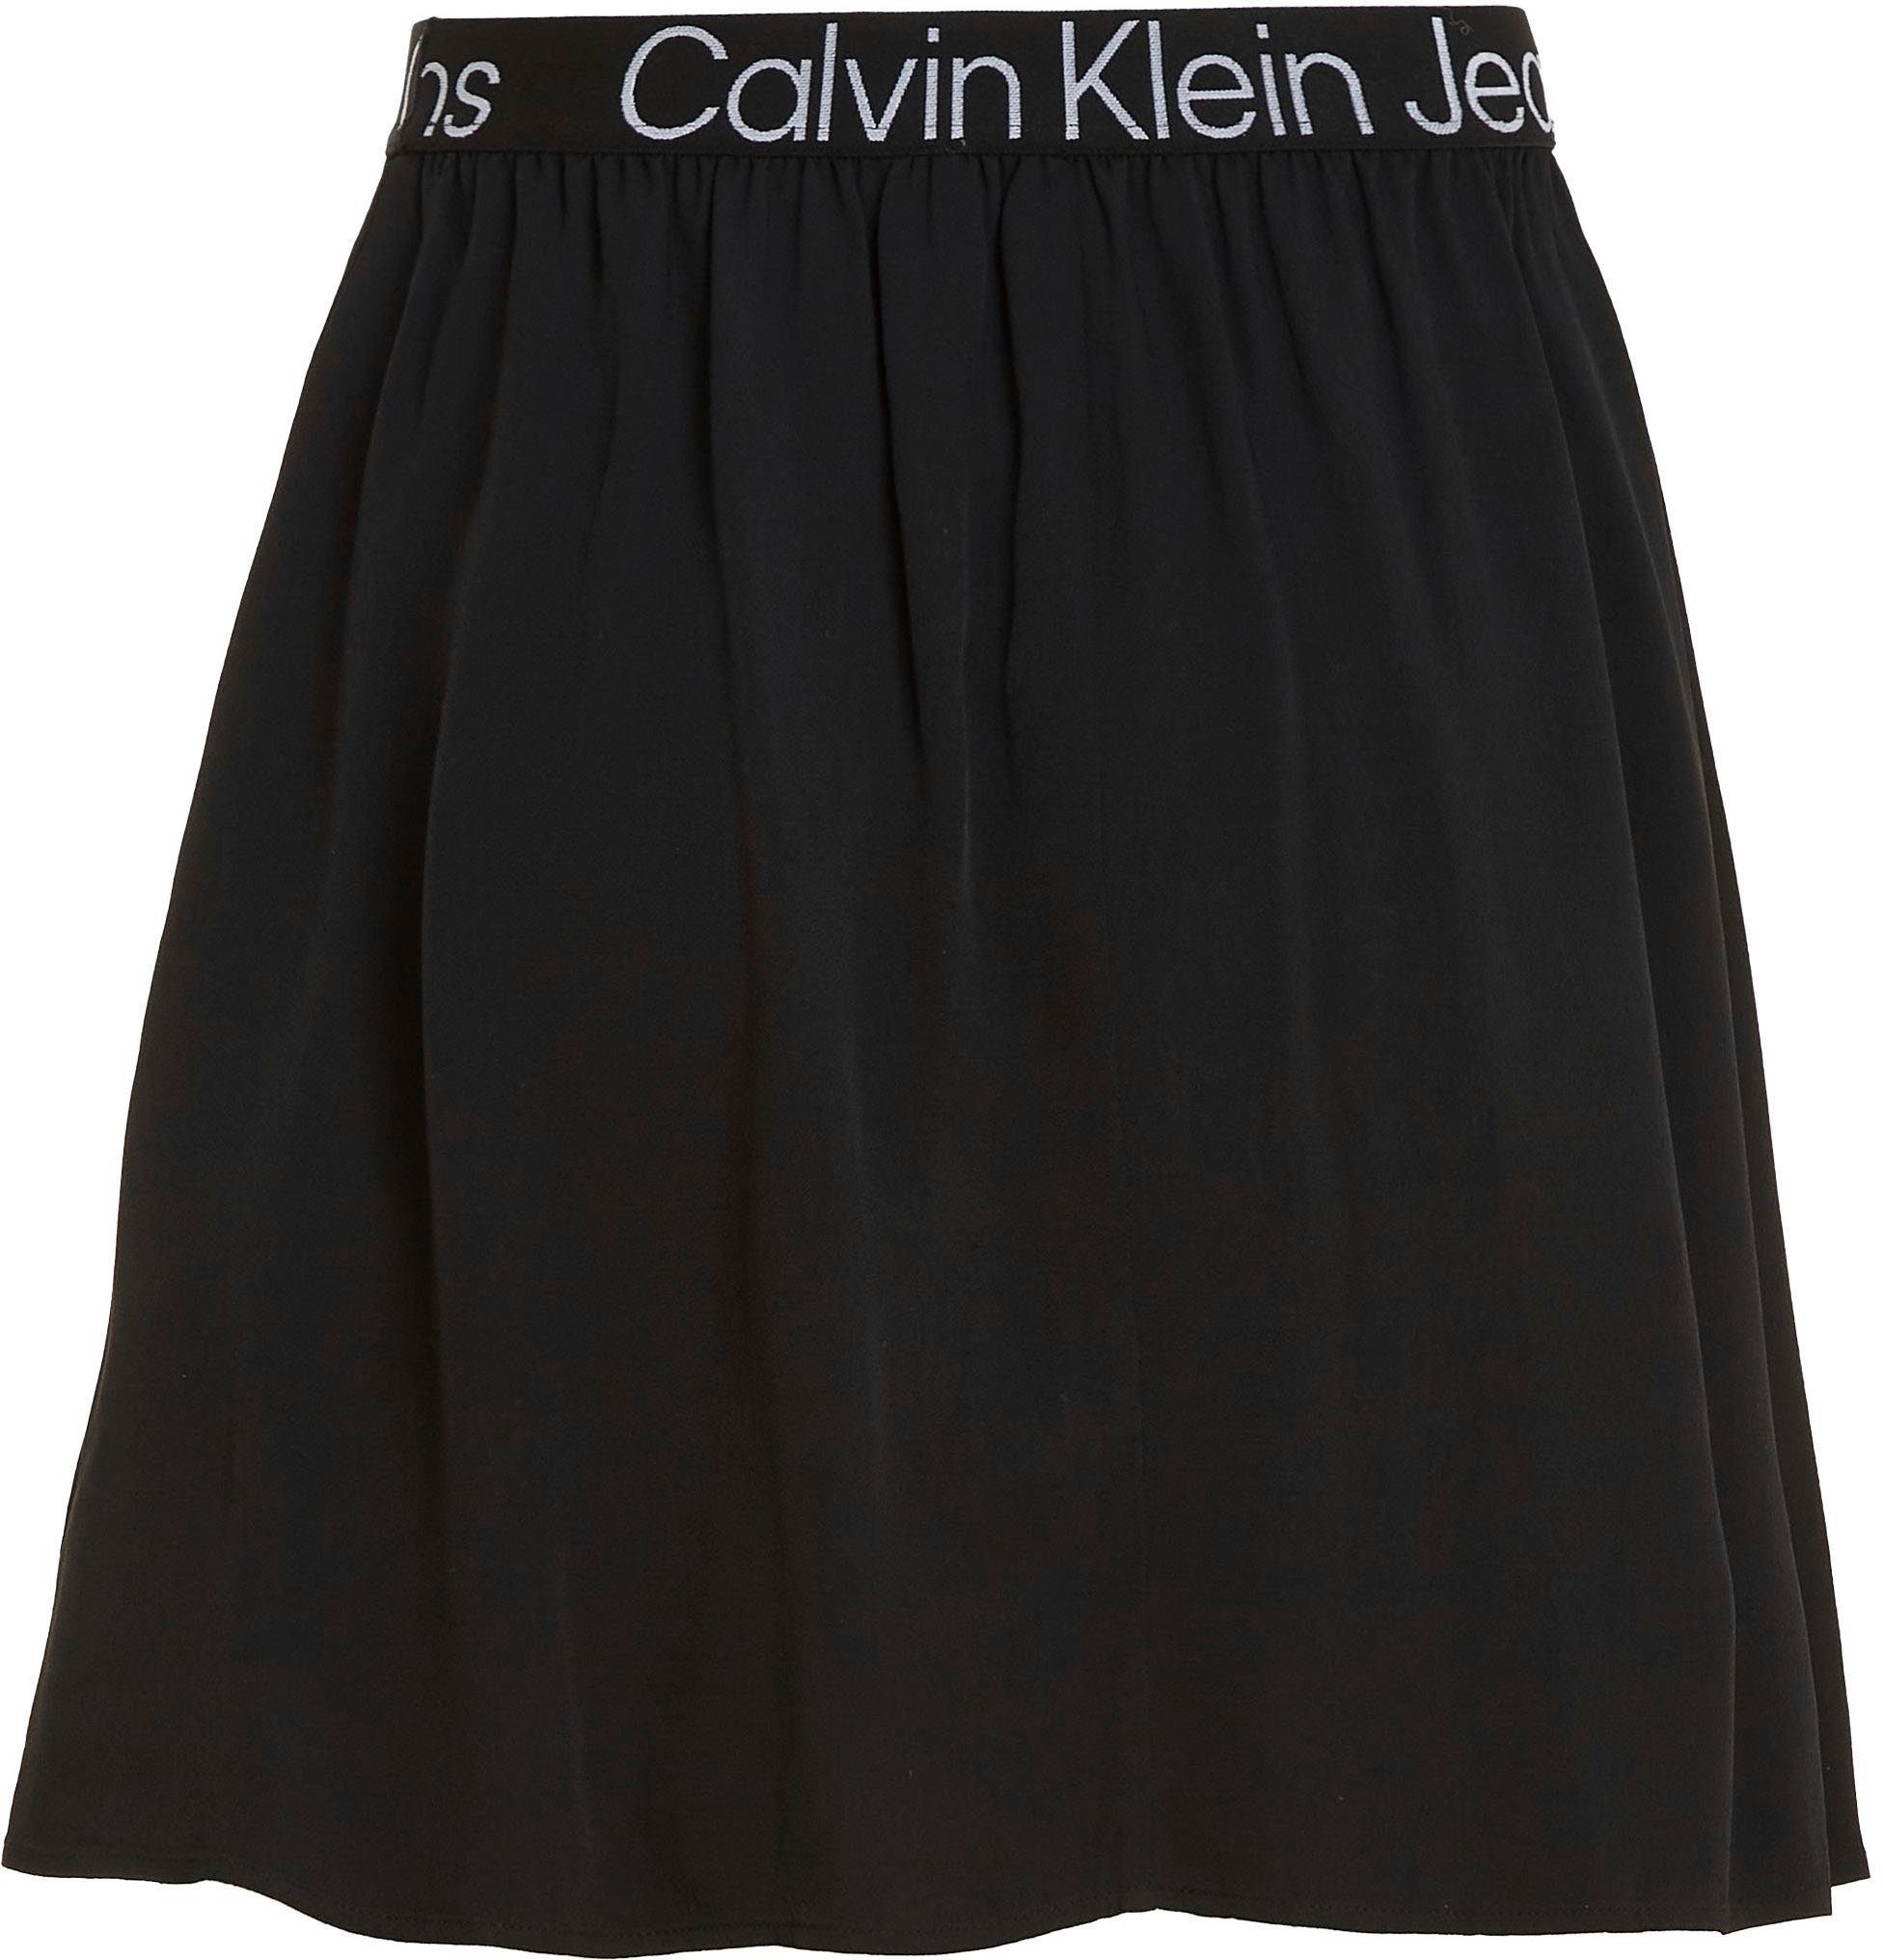 Calvin Calvin Jeans Minirock schwarz elastischem Klein Klein Jeans-Bund mit